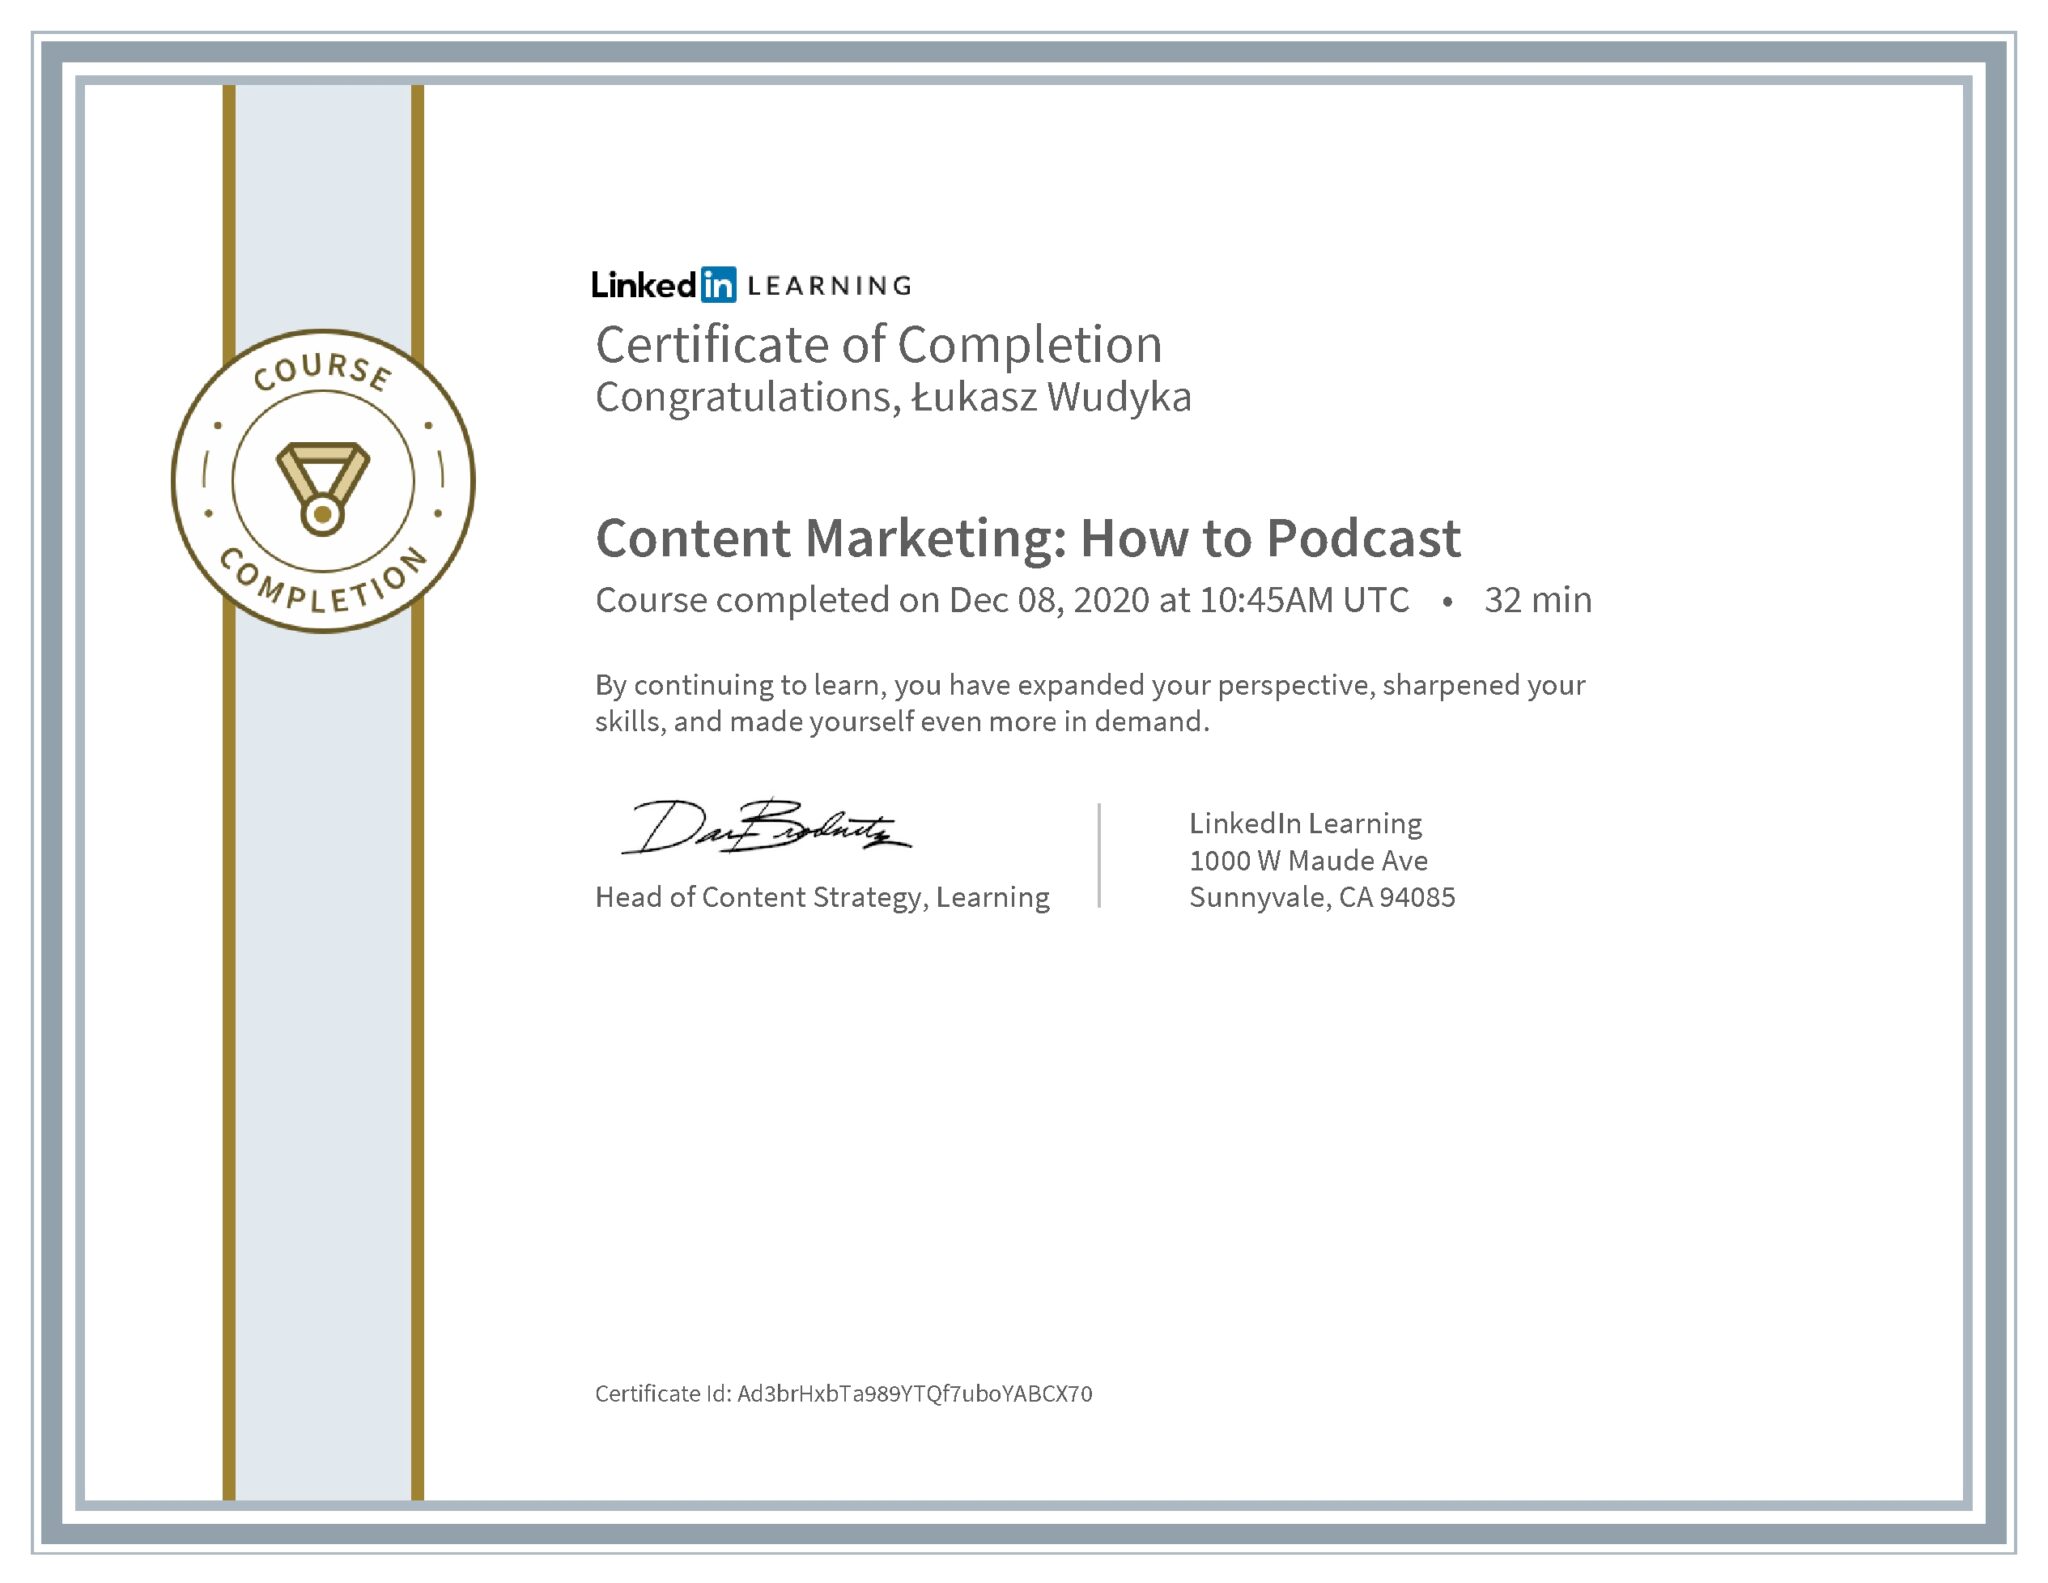 Łukasz Wudyka certyfikat LinkedIn Content Marketing: How to Podcast